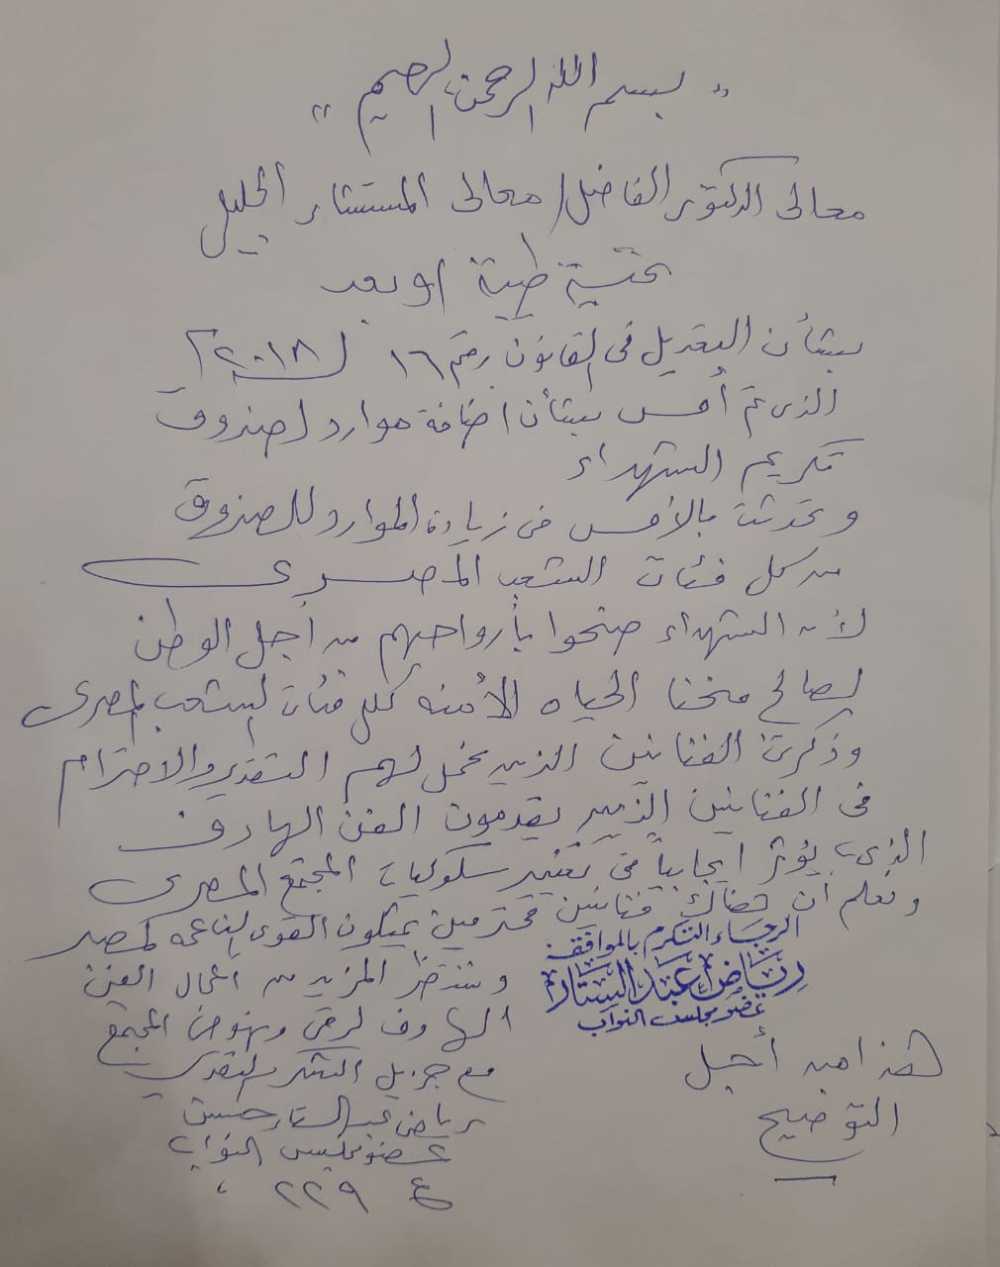 نص اعتذار النائب رياض عبد الستار